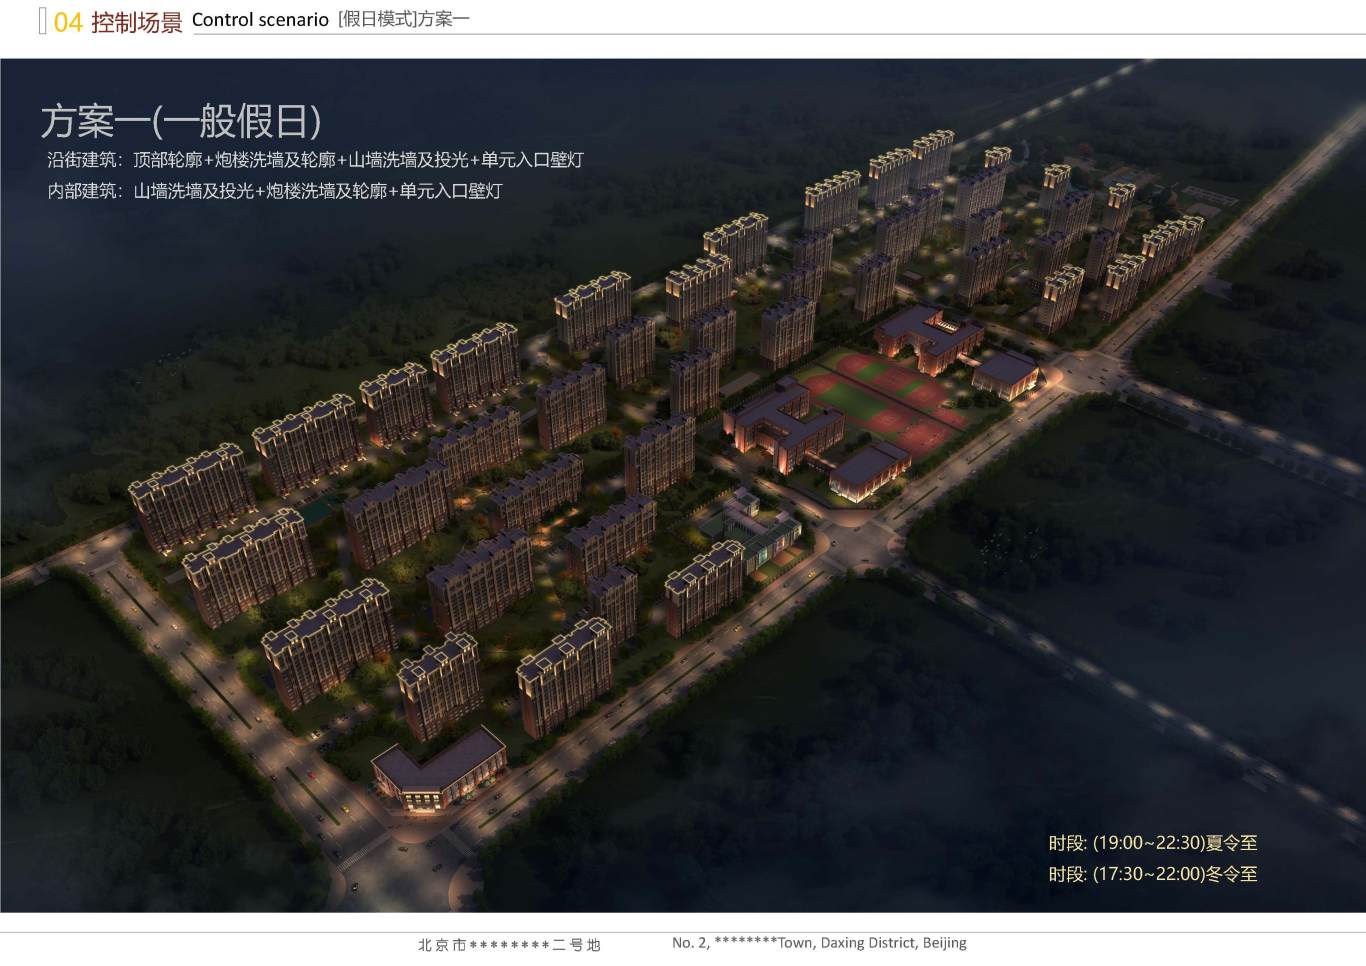 北京市大興區*****二號地夜景照明項目案例圖39